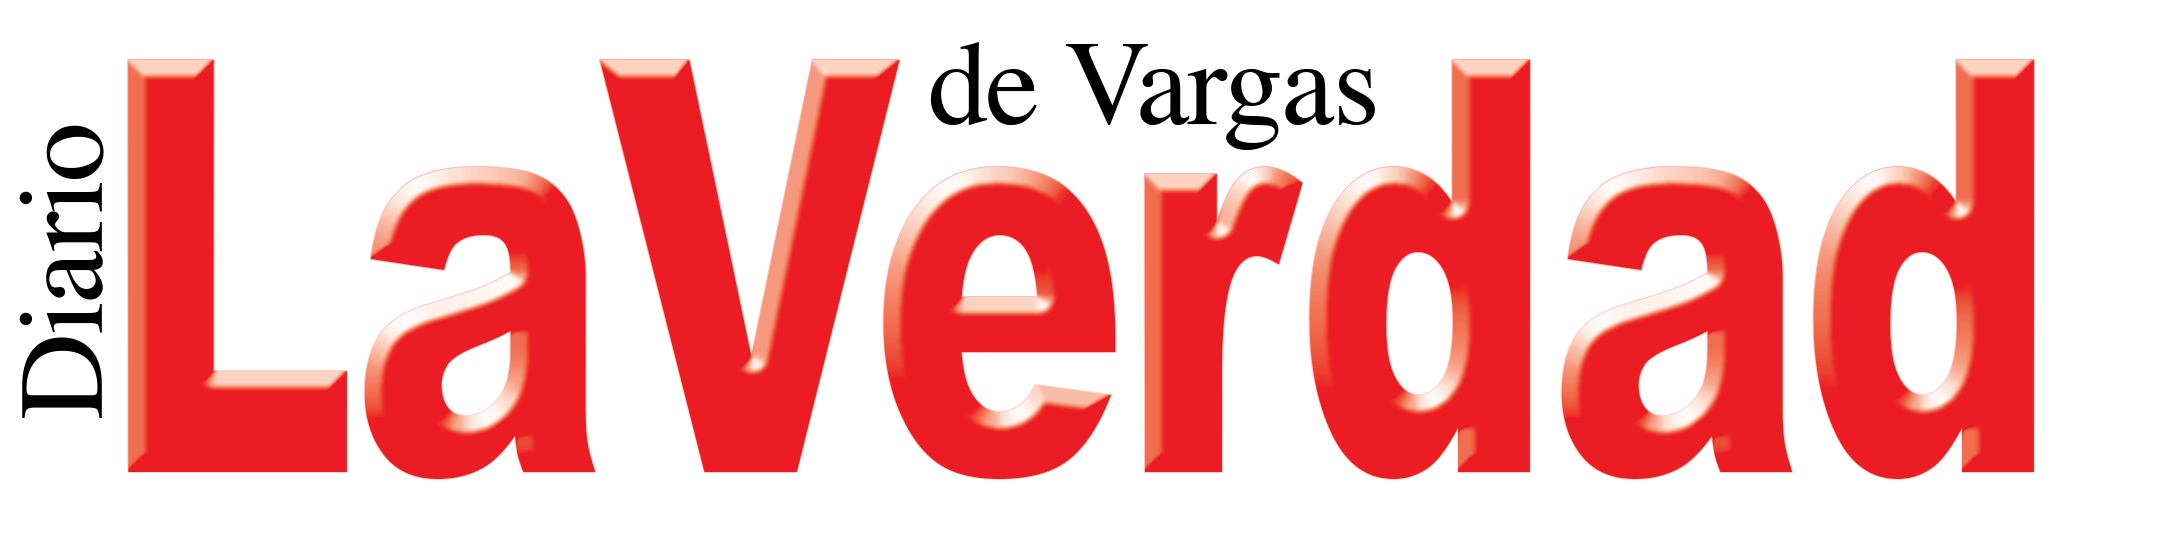 Diario La Verdad de Vargas